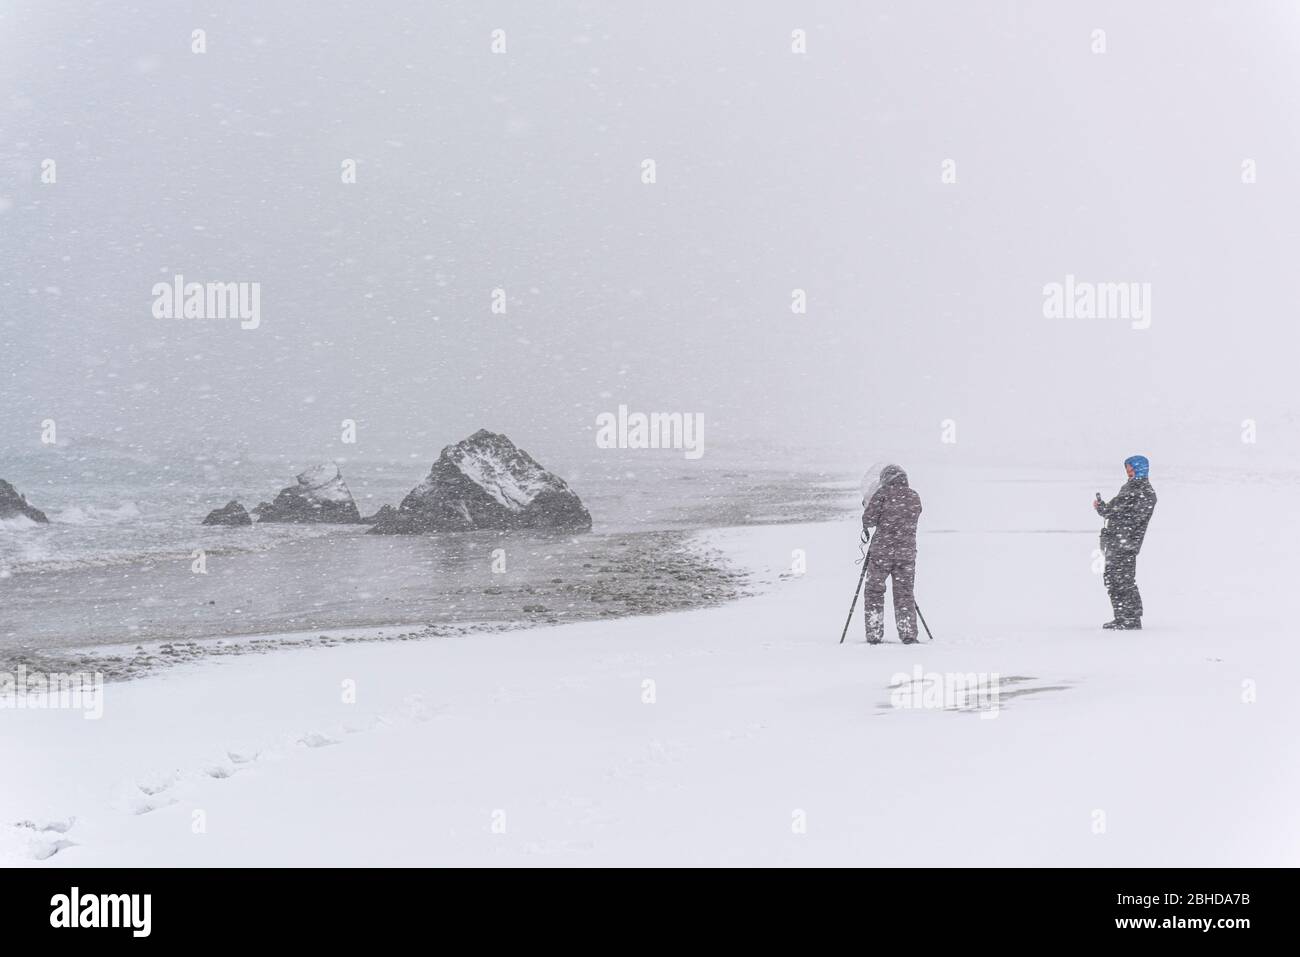 Personne imreconnaissable photographiant un rocher sur la plage lors d'une tempête de neige venteuse Banque D'Images